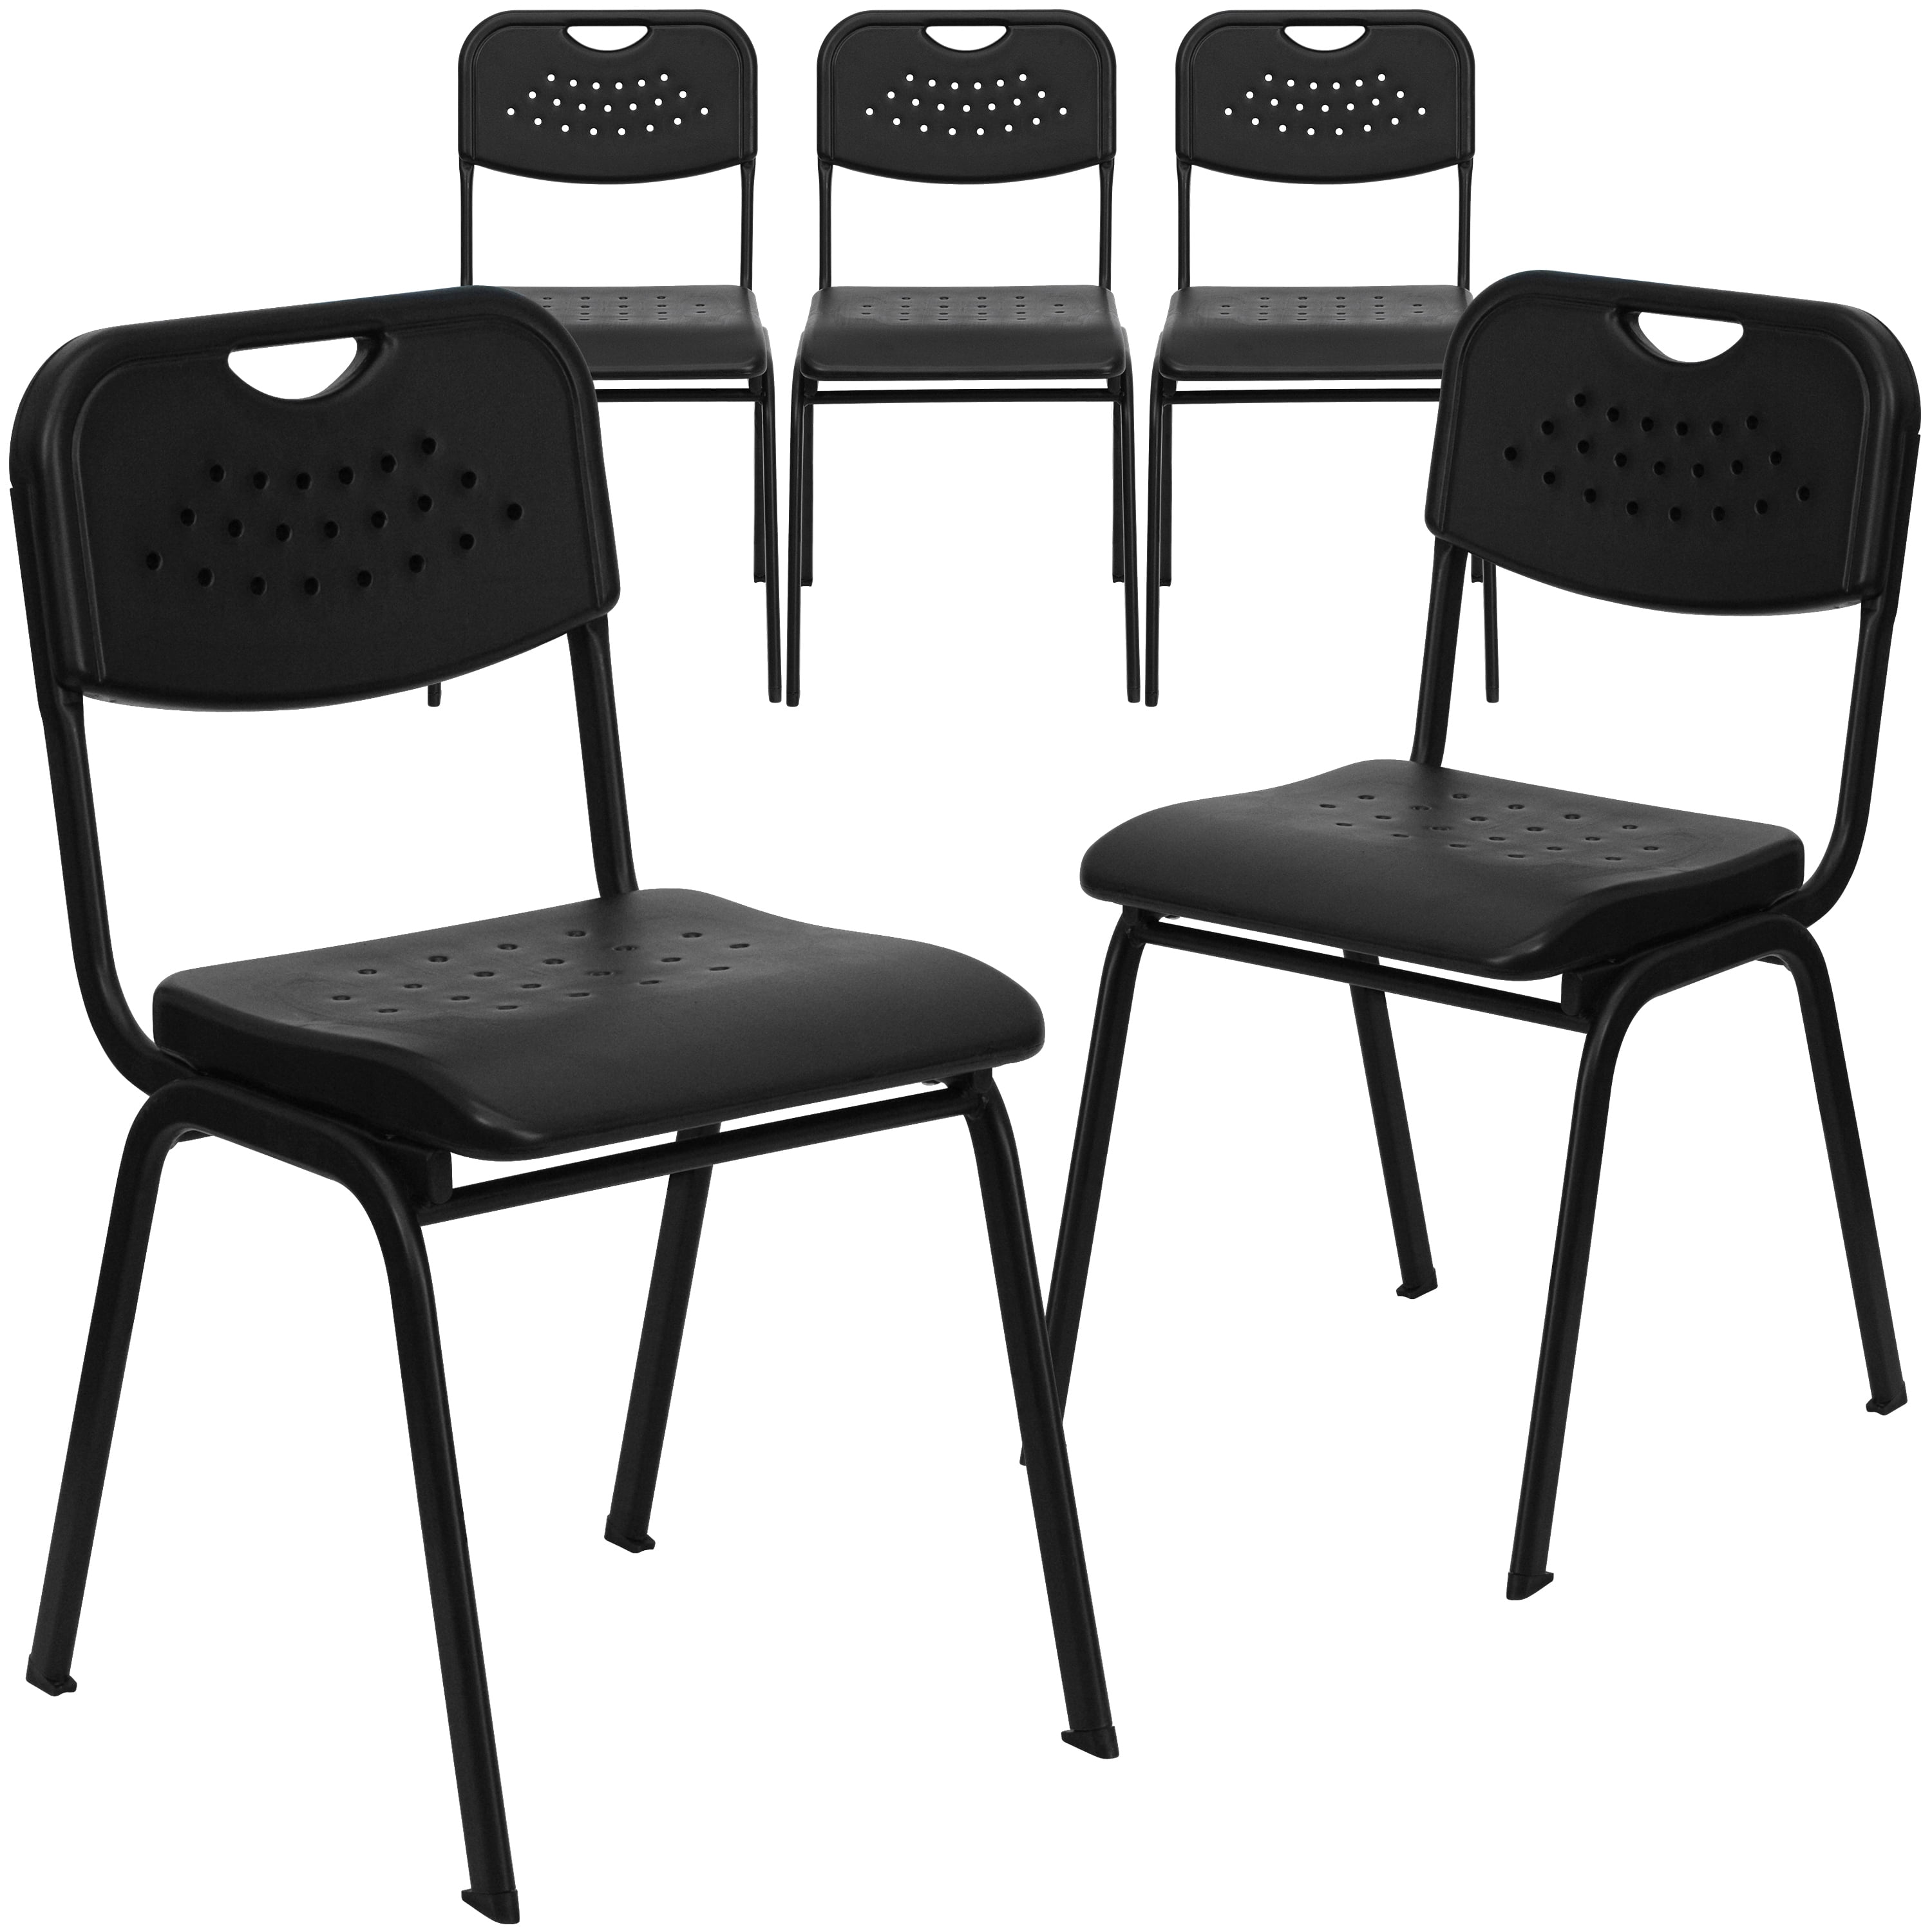 Capacity Black Plastic Stack Chair Flash Furniture HERCULES Series 880 lb 